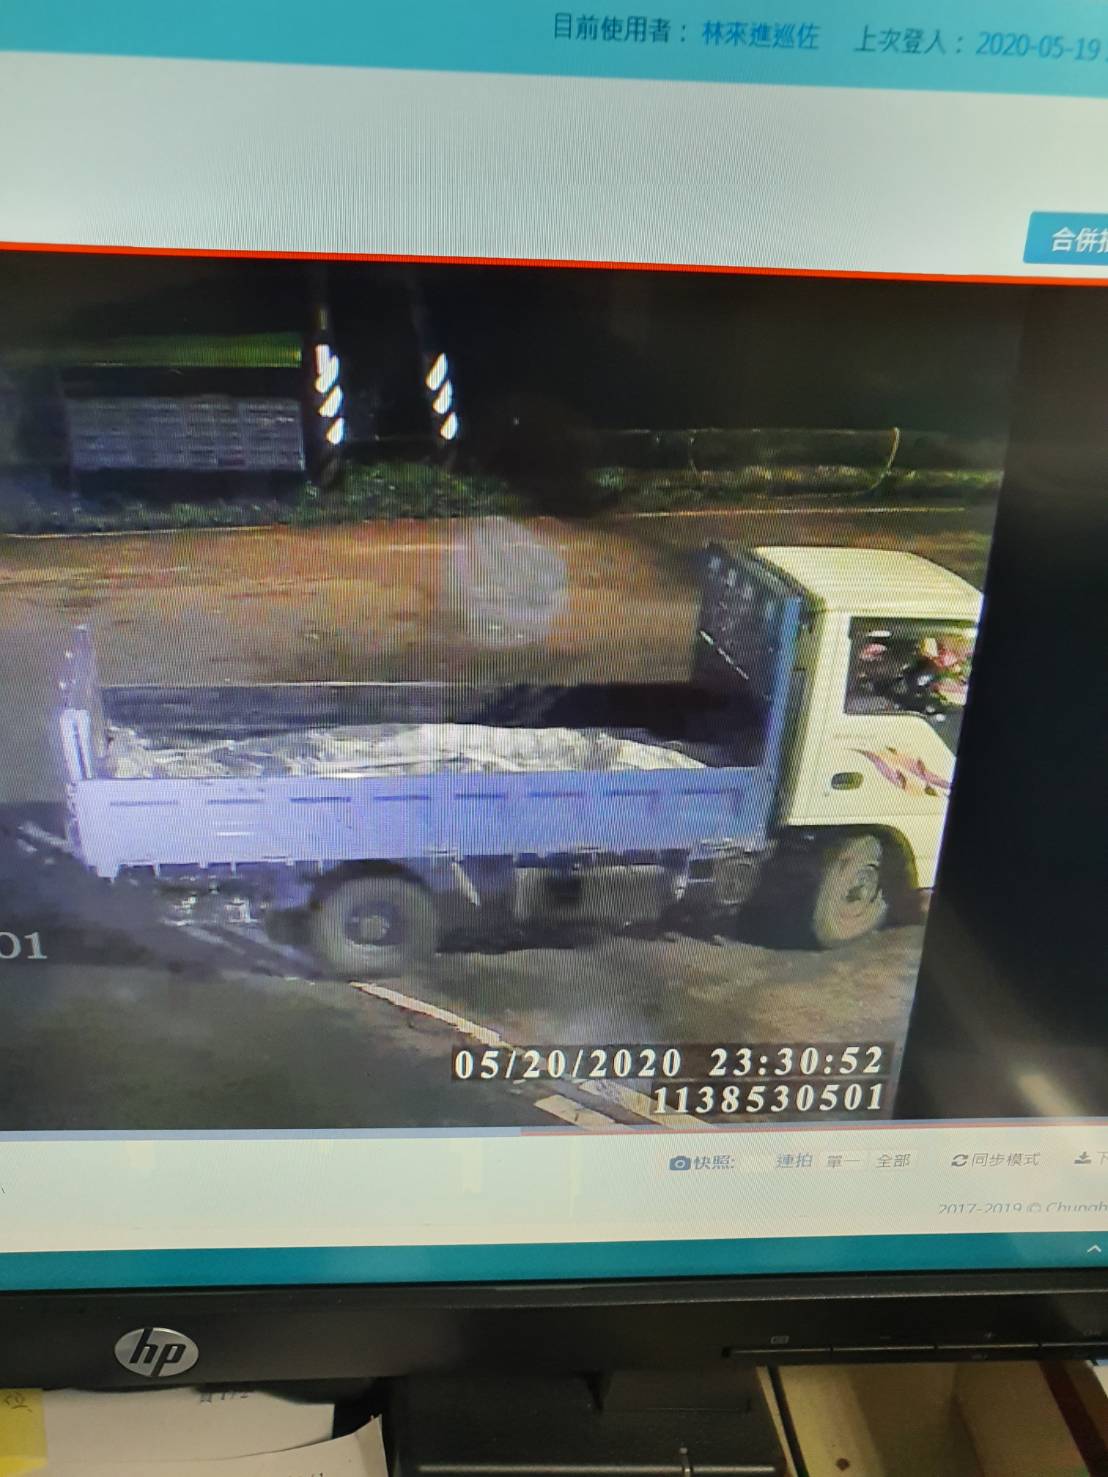 經三峽分局協助調閱監視器，查獲濫倒車輛為自用小貨車